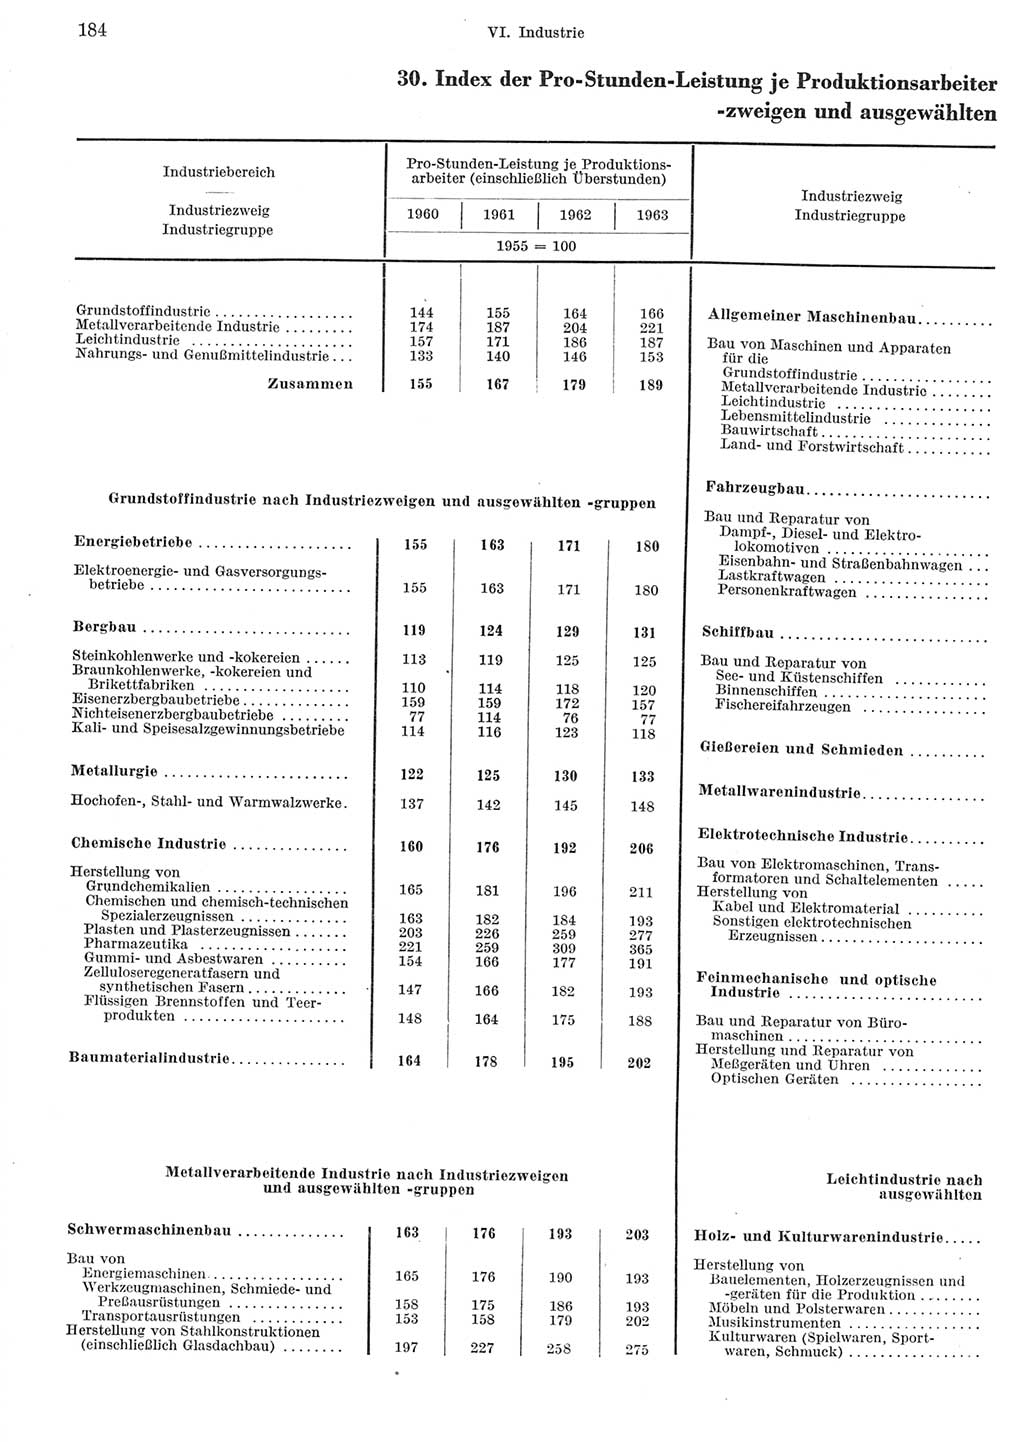 Statistisches Jahrbuch der Deutschen Demokratischen Republik (DDR) 1965, Seite 184 (Stat. Jb. DDR 1965, S. 184)